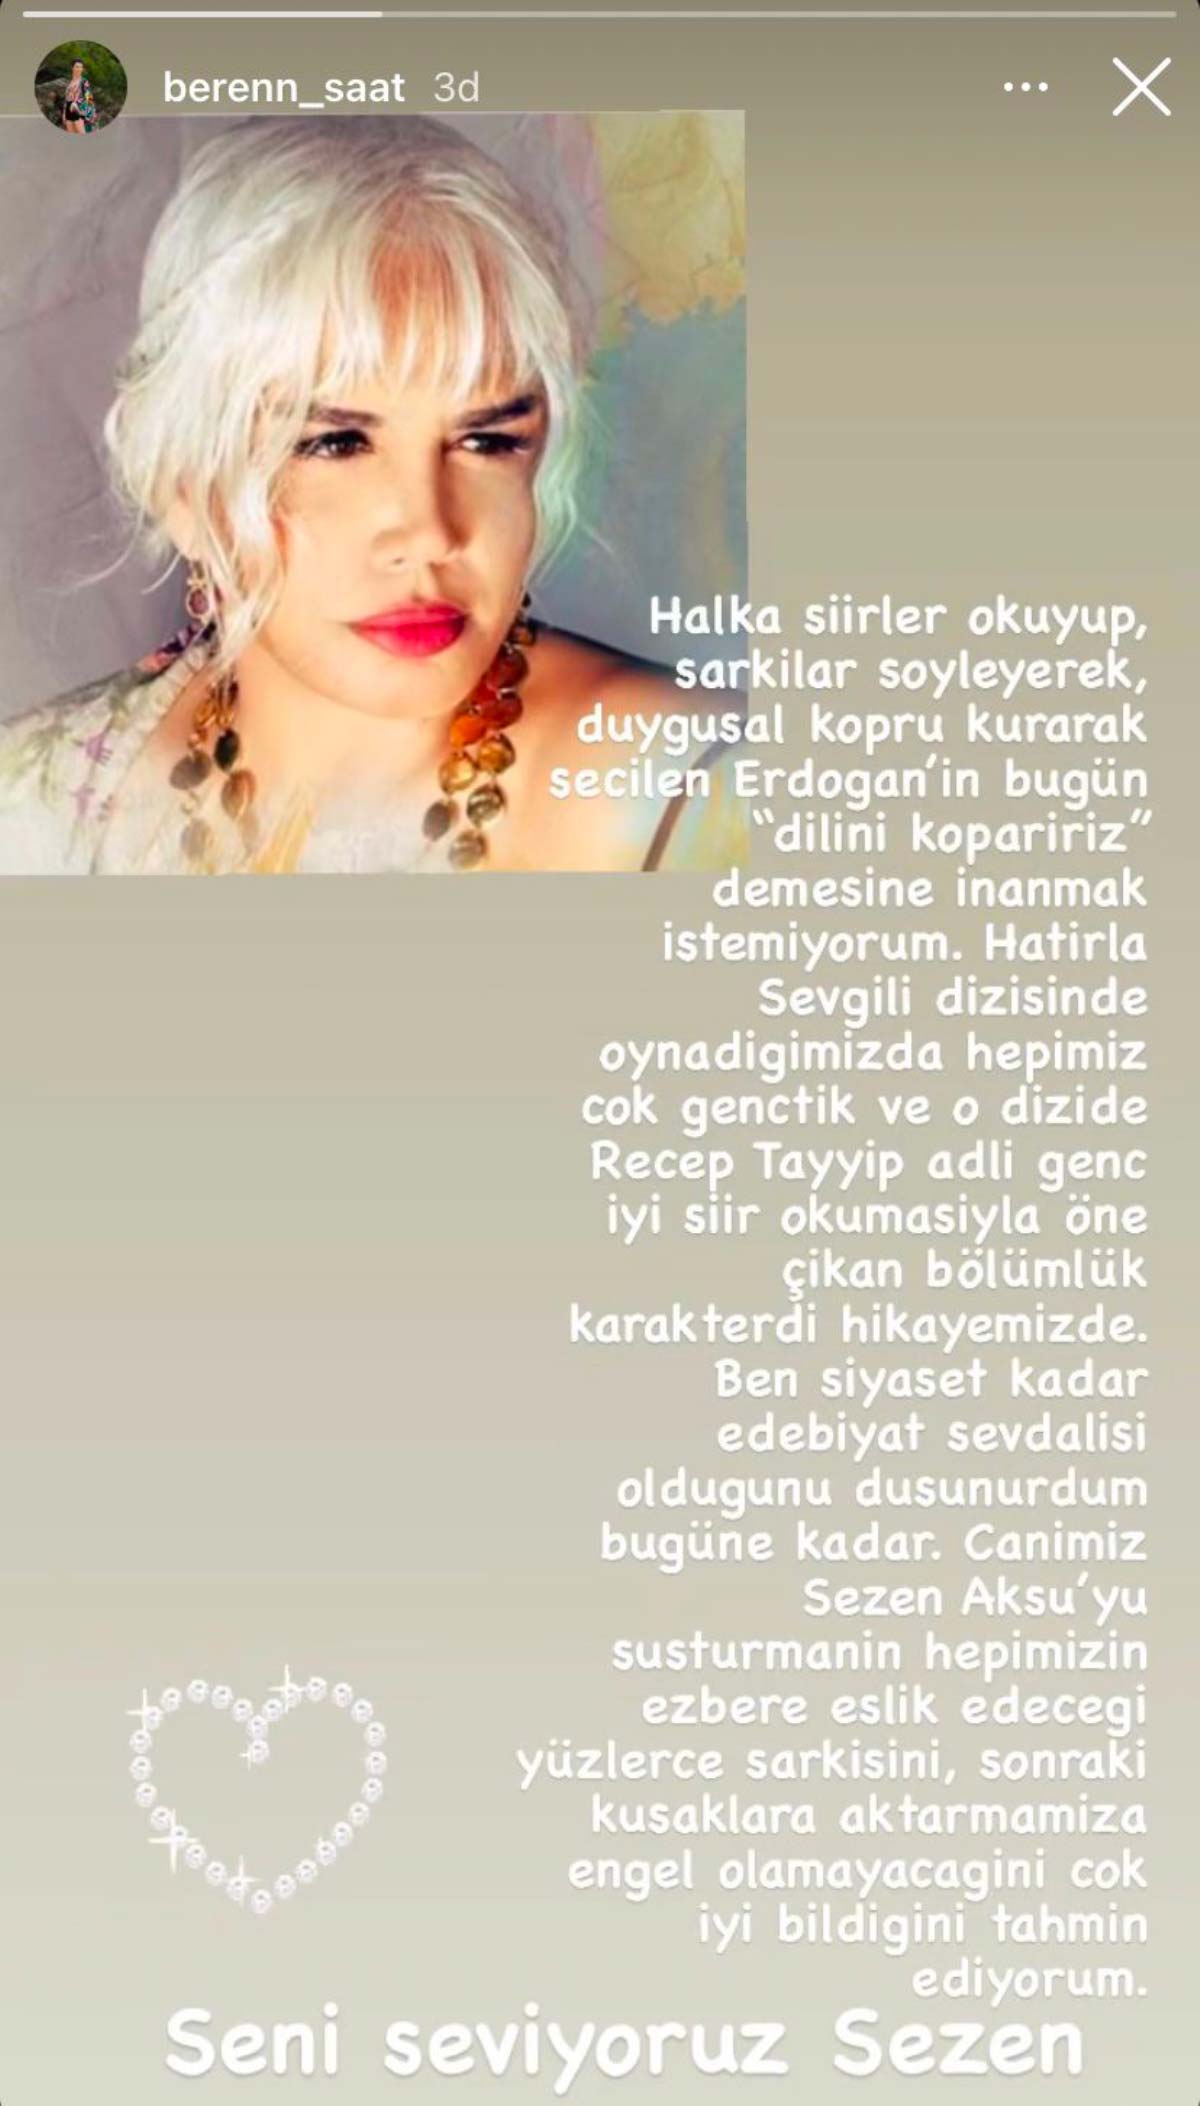 Beren Saat'ten, Sezen Aksu’yu hedef alan Erdoğan'a tepki: 'Halka şiirler okuyup, şarkılar söyleyerek seçilen...'